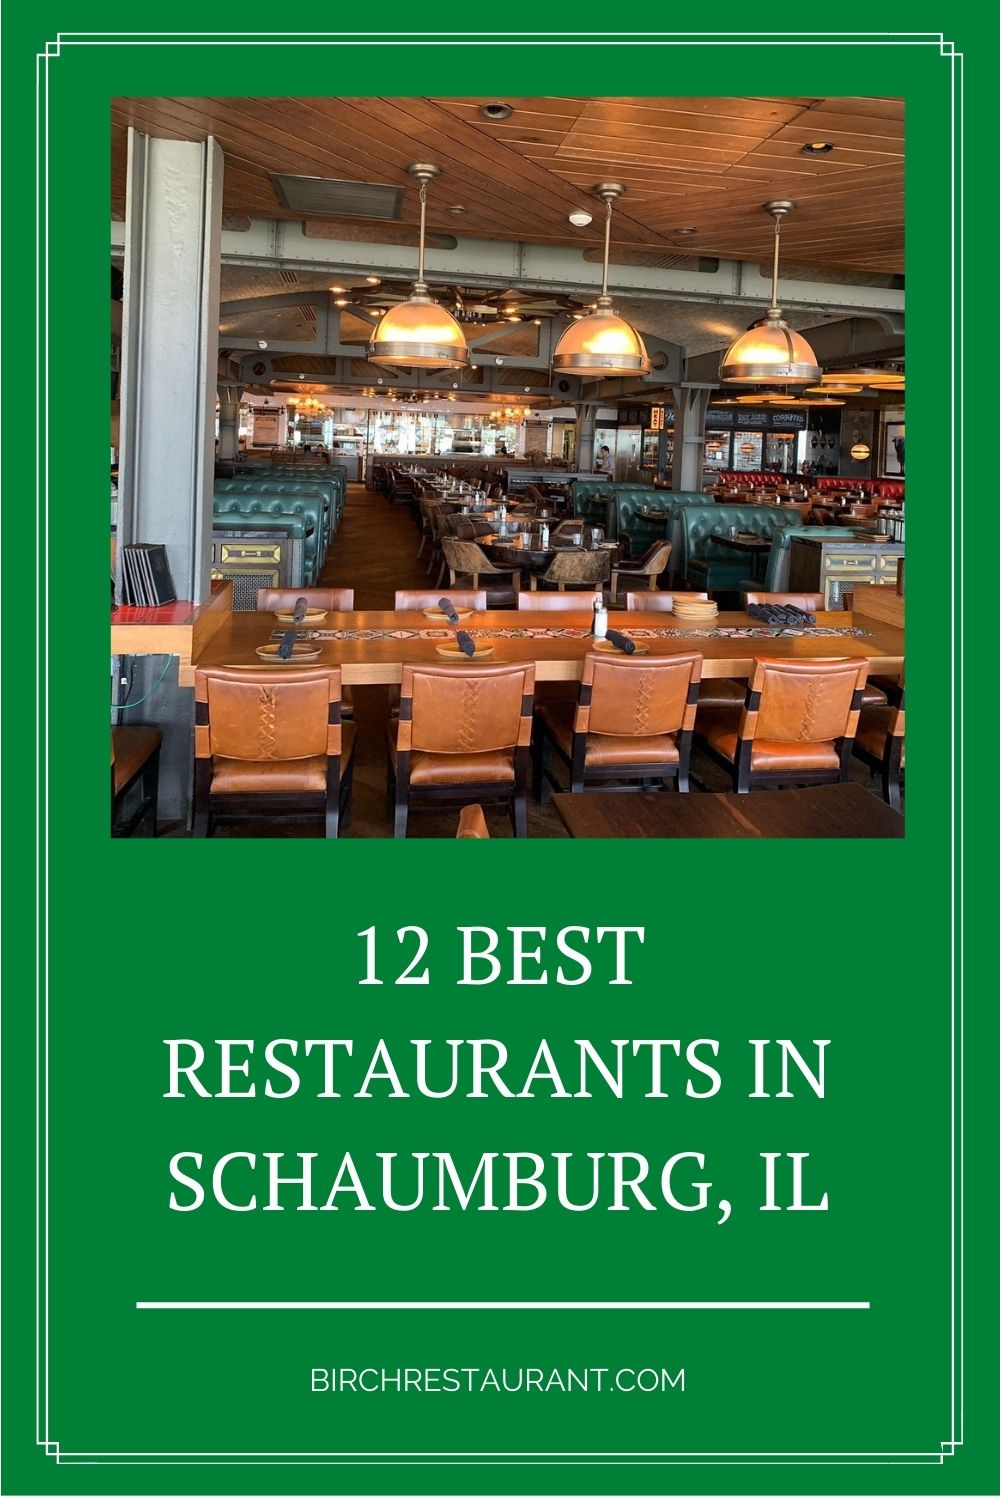 Best Restaurants in Schaumburg